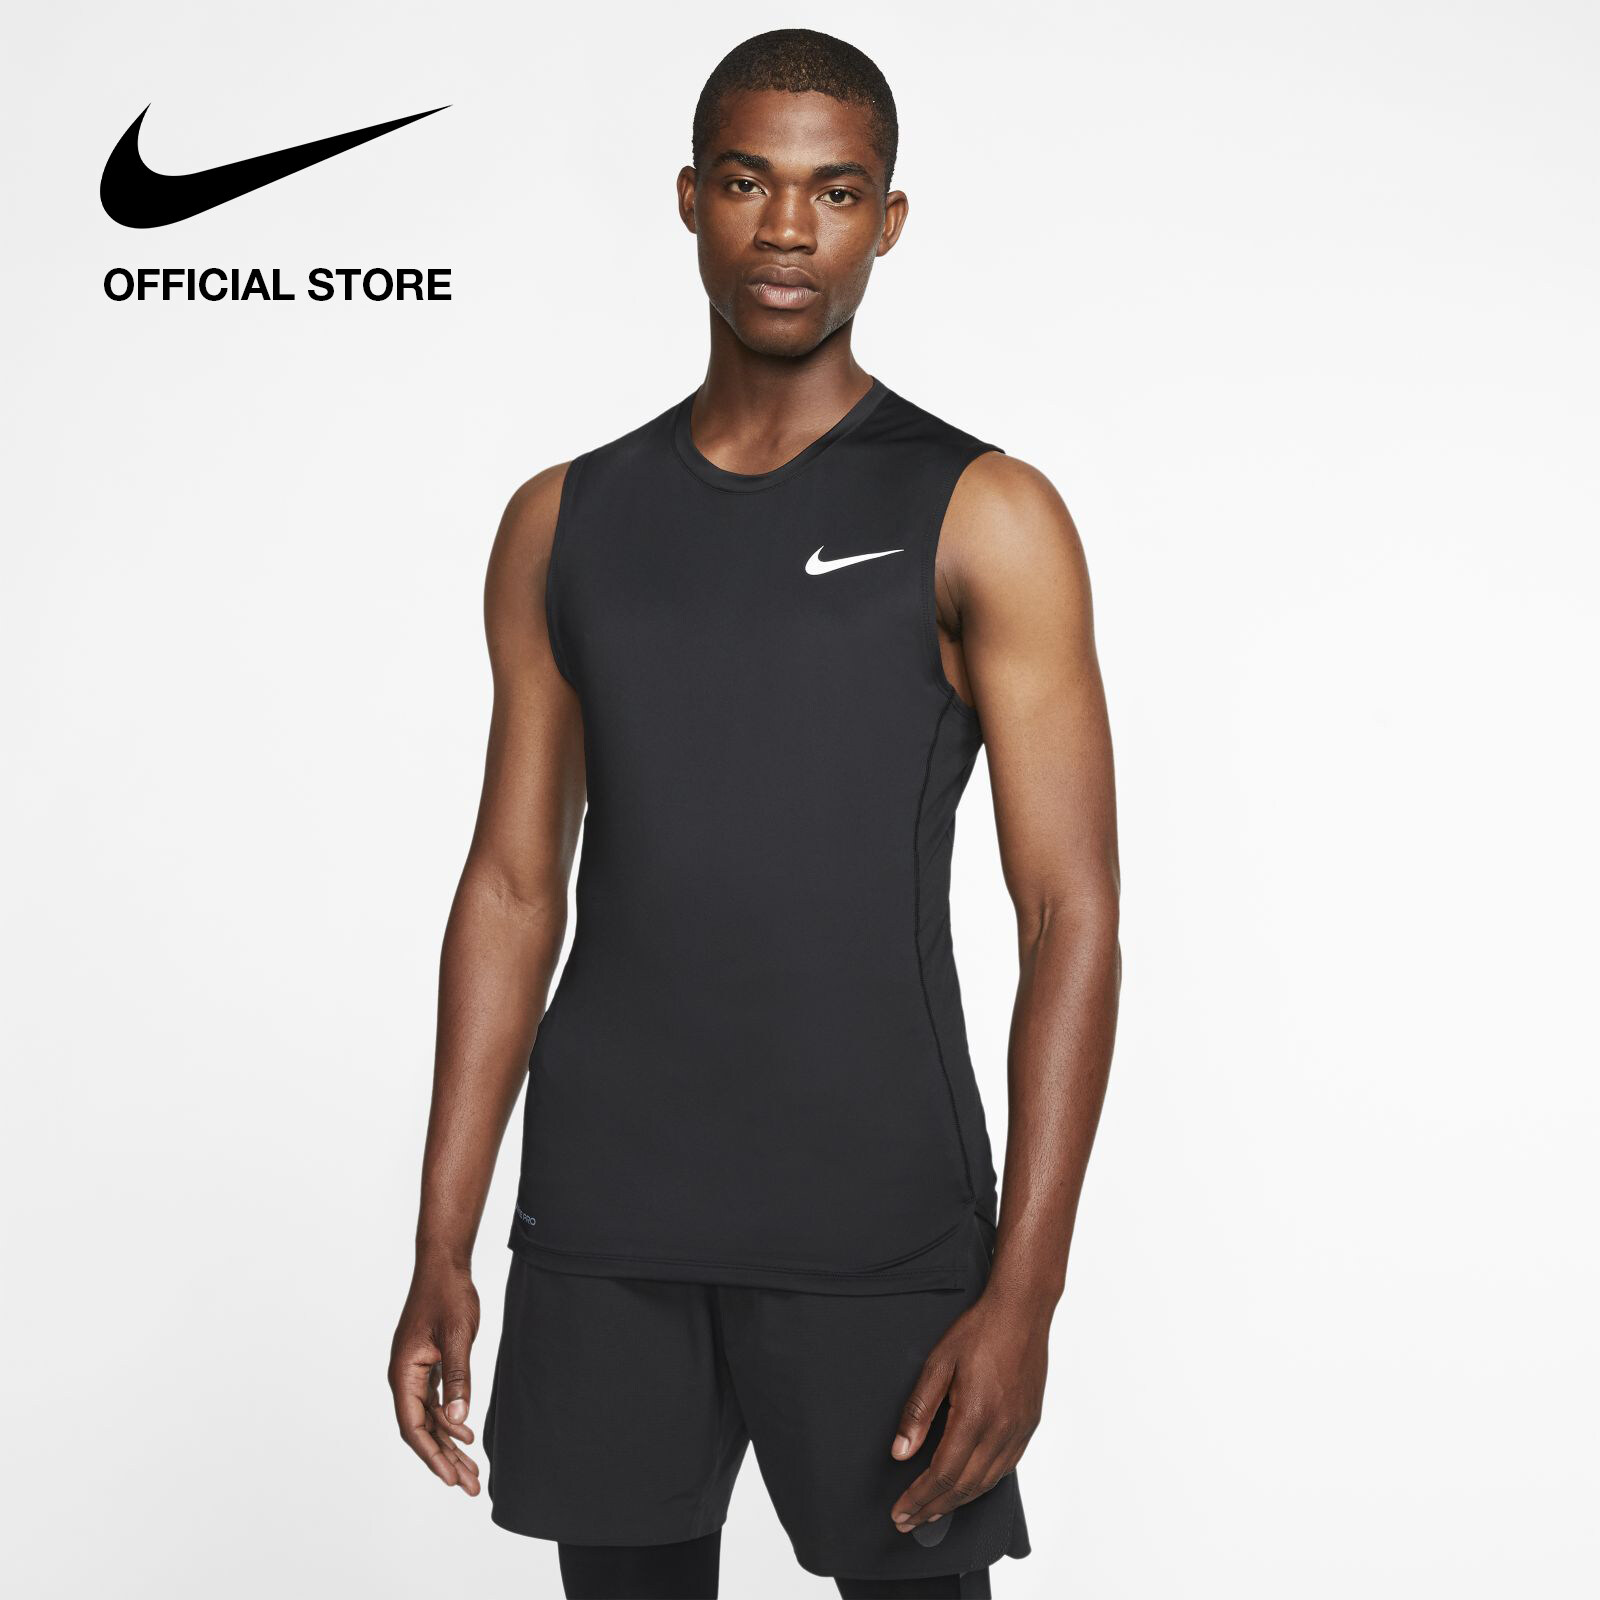 Nike Men's Pro Training Tank - Black ไนกี้ เสื้อกล้ามเทรนนิ่งผู้ชาย โปร - สีดำ